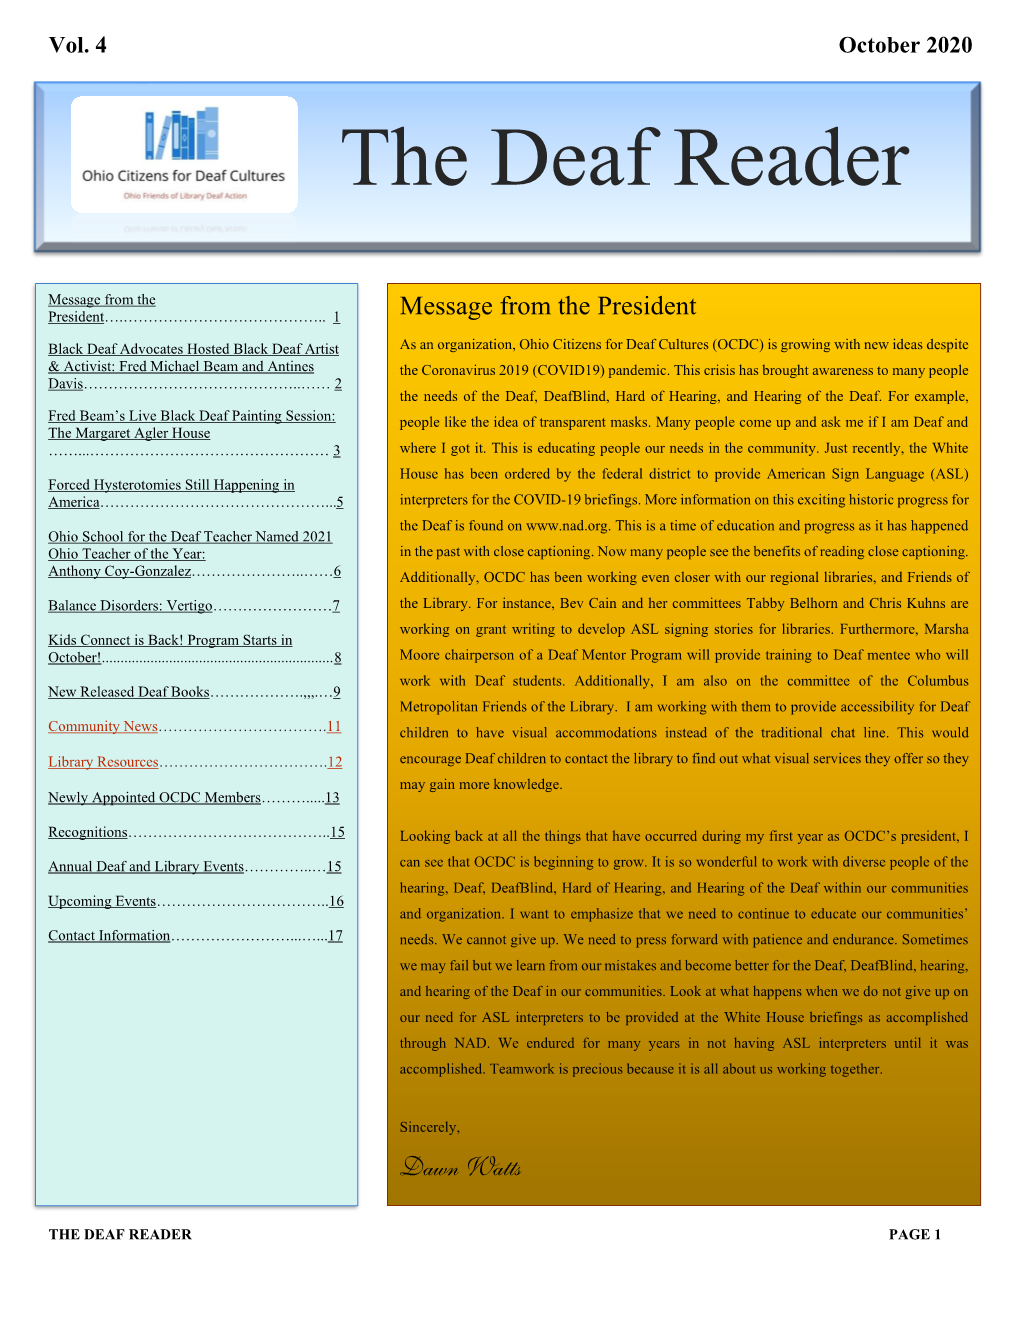 The Deaf Reader